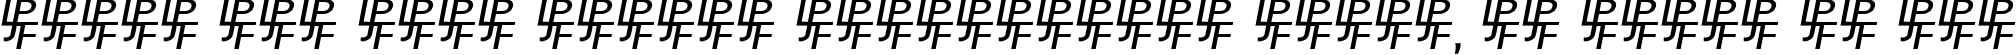 Пример написания шрифтом Birmingham Sans Serif текста на русском